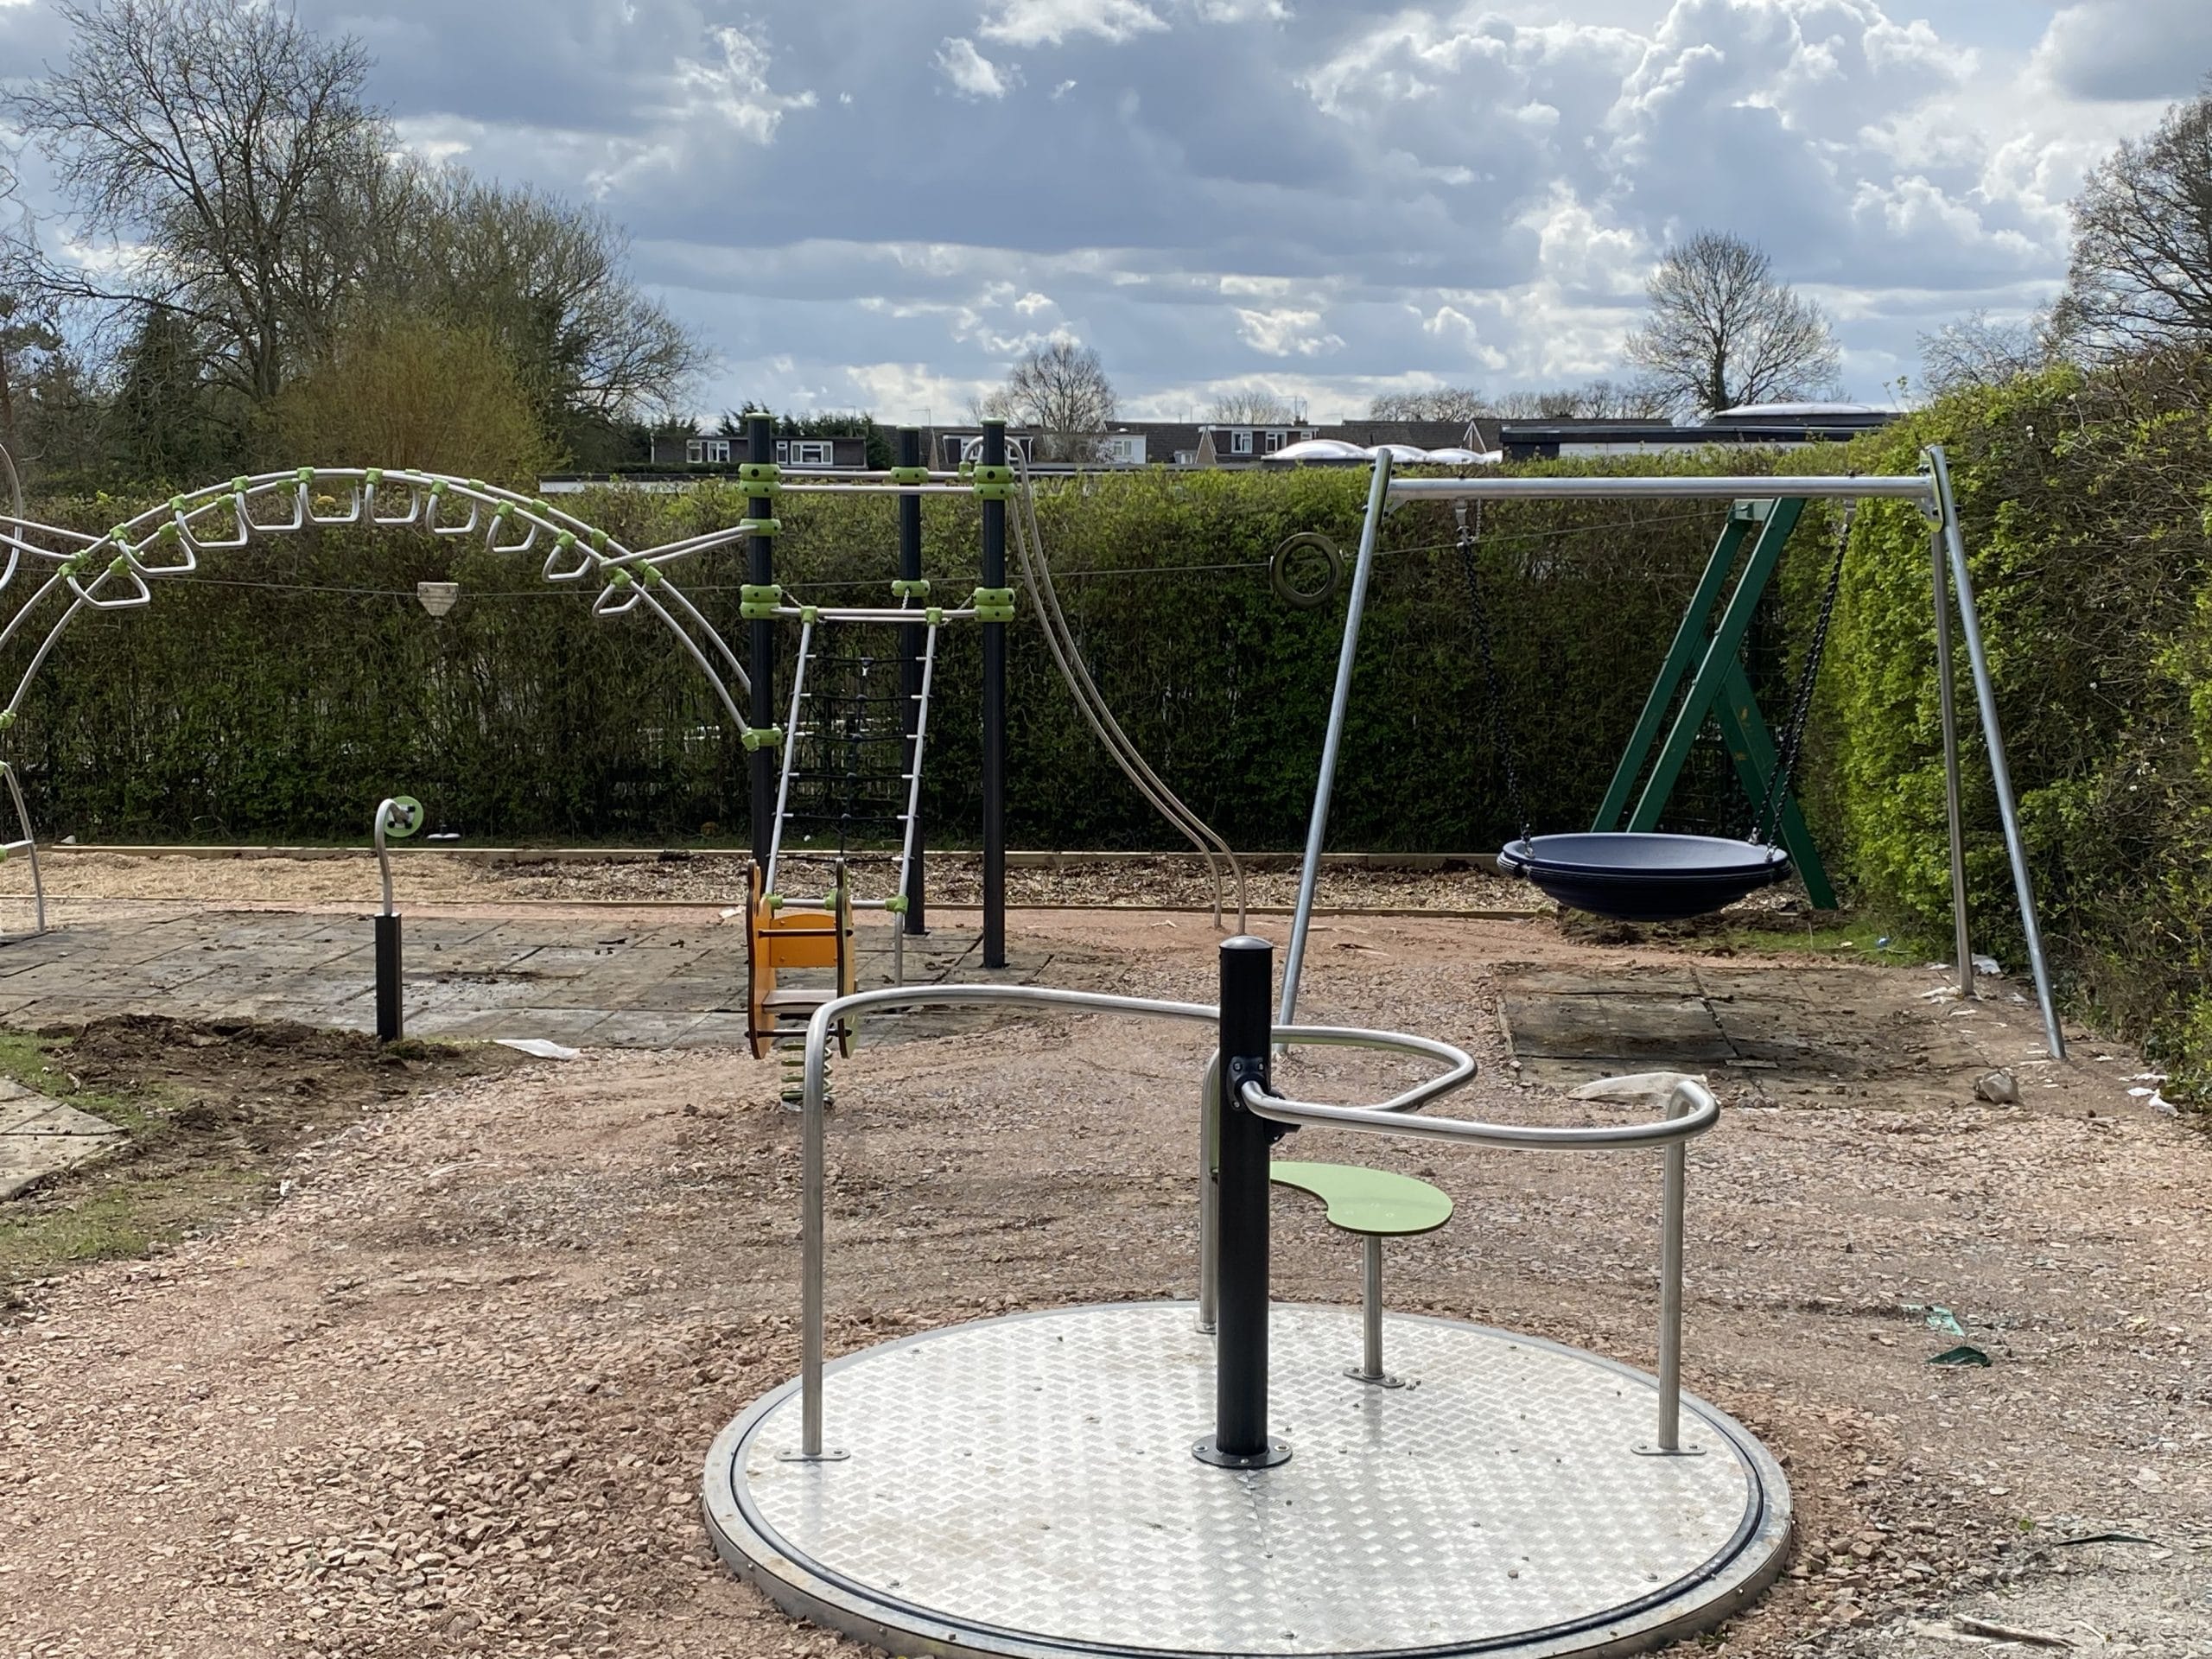 Children's Playground refurbishment